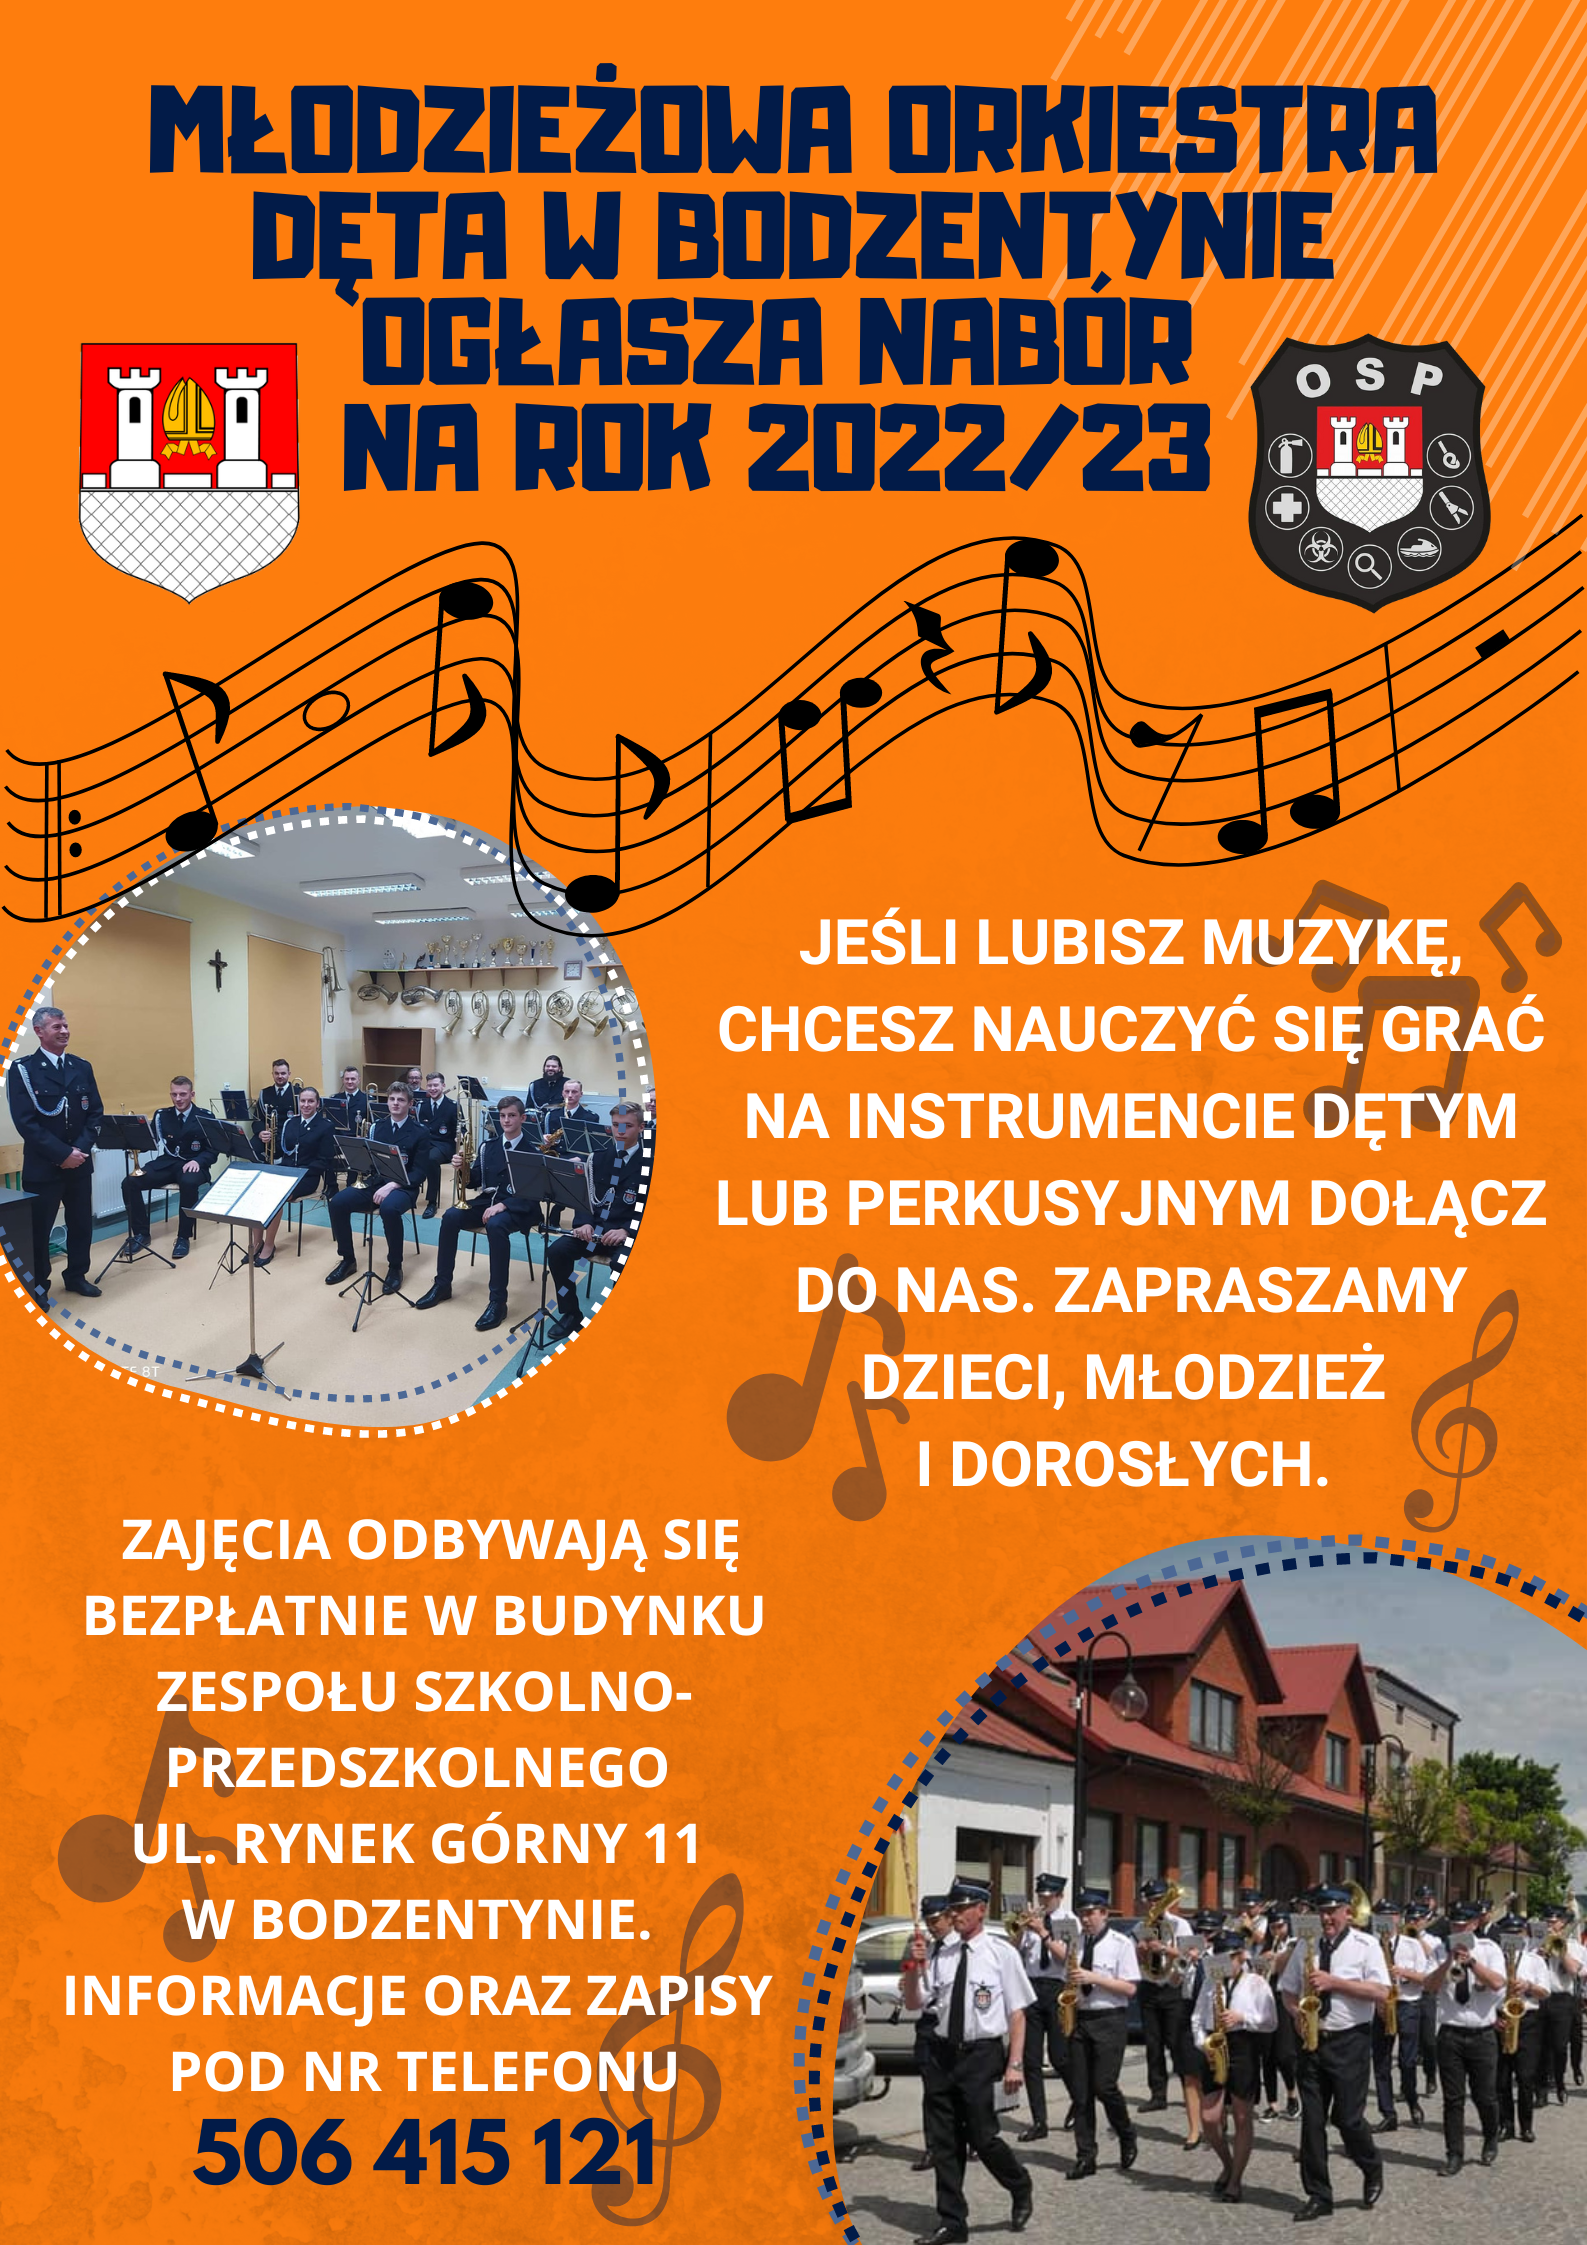 Modzieowa Orkiestra dta w Bodzentynie ogasza Nabr na rok 2023 1